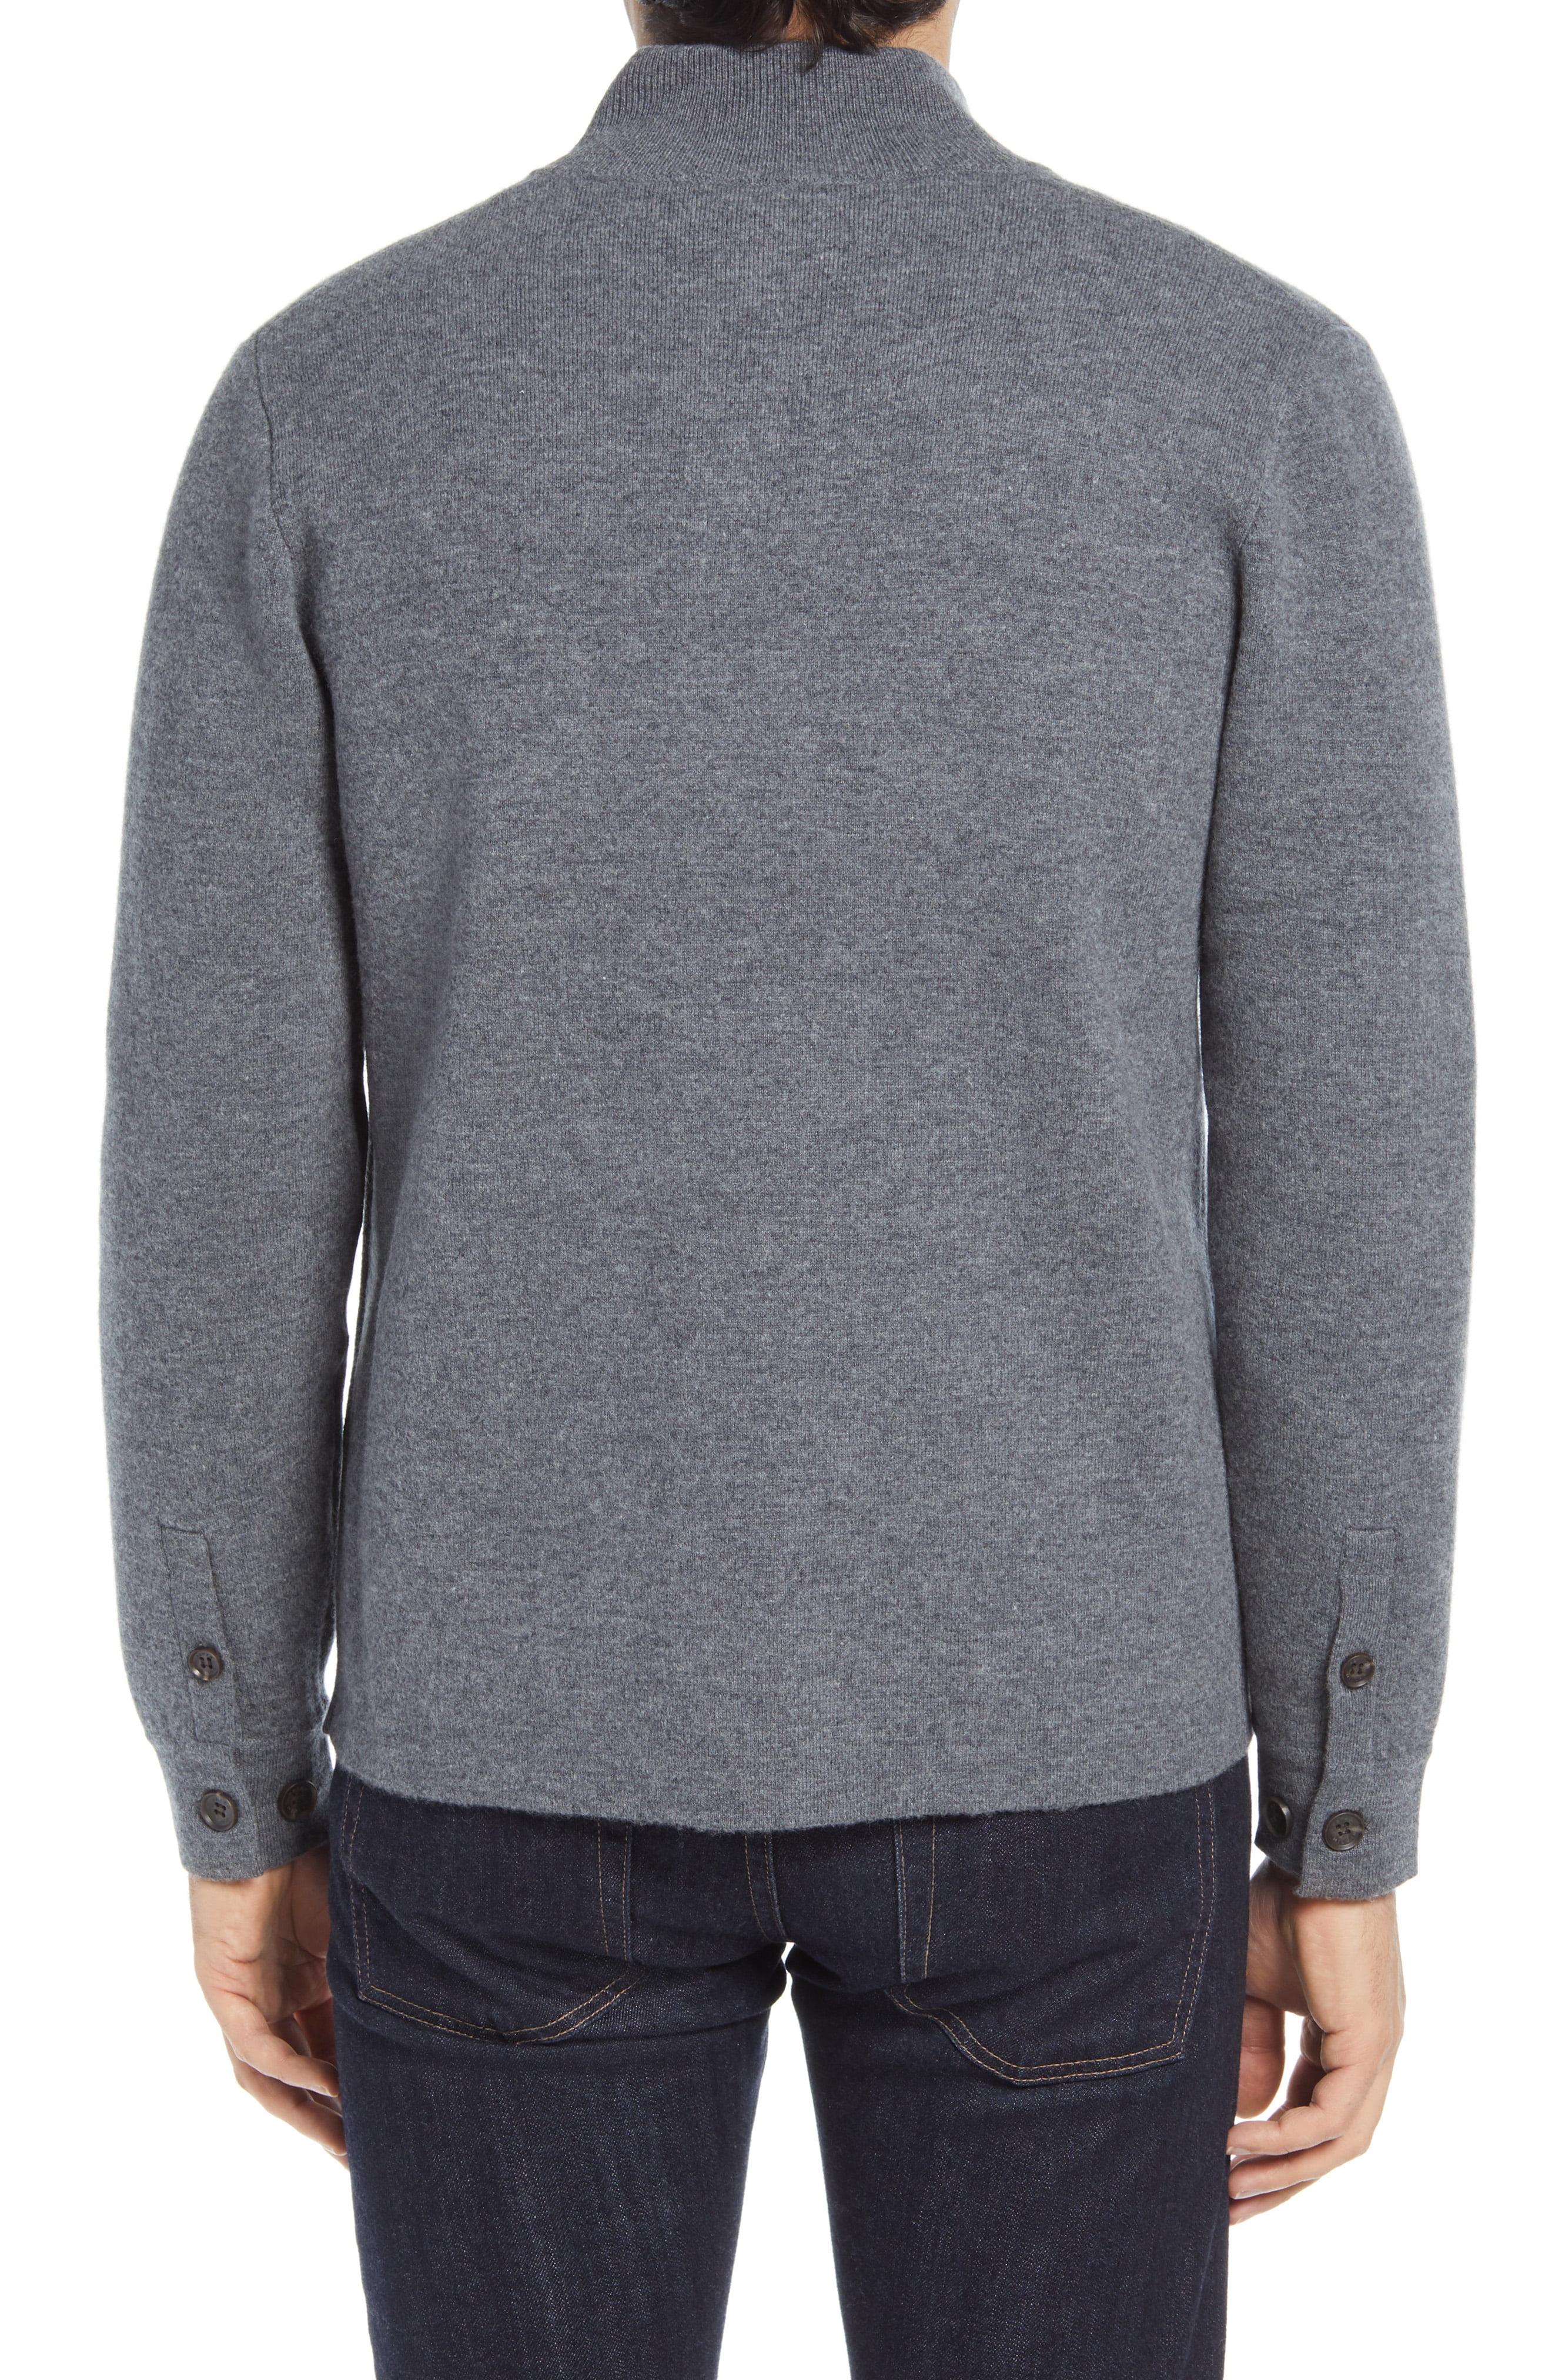 Peter Millar Wool Sweater Jacket in Gray for Men - Lyst